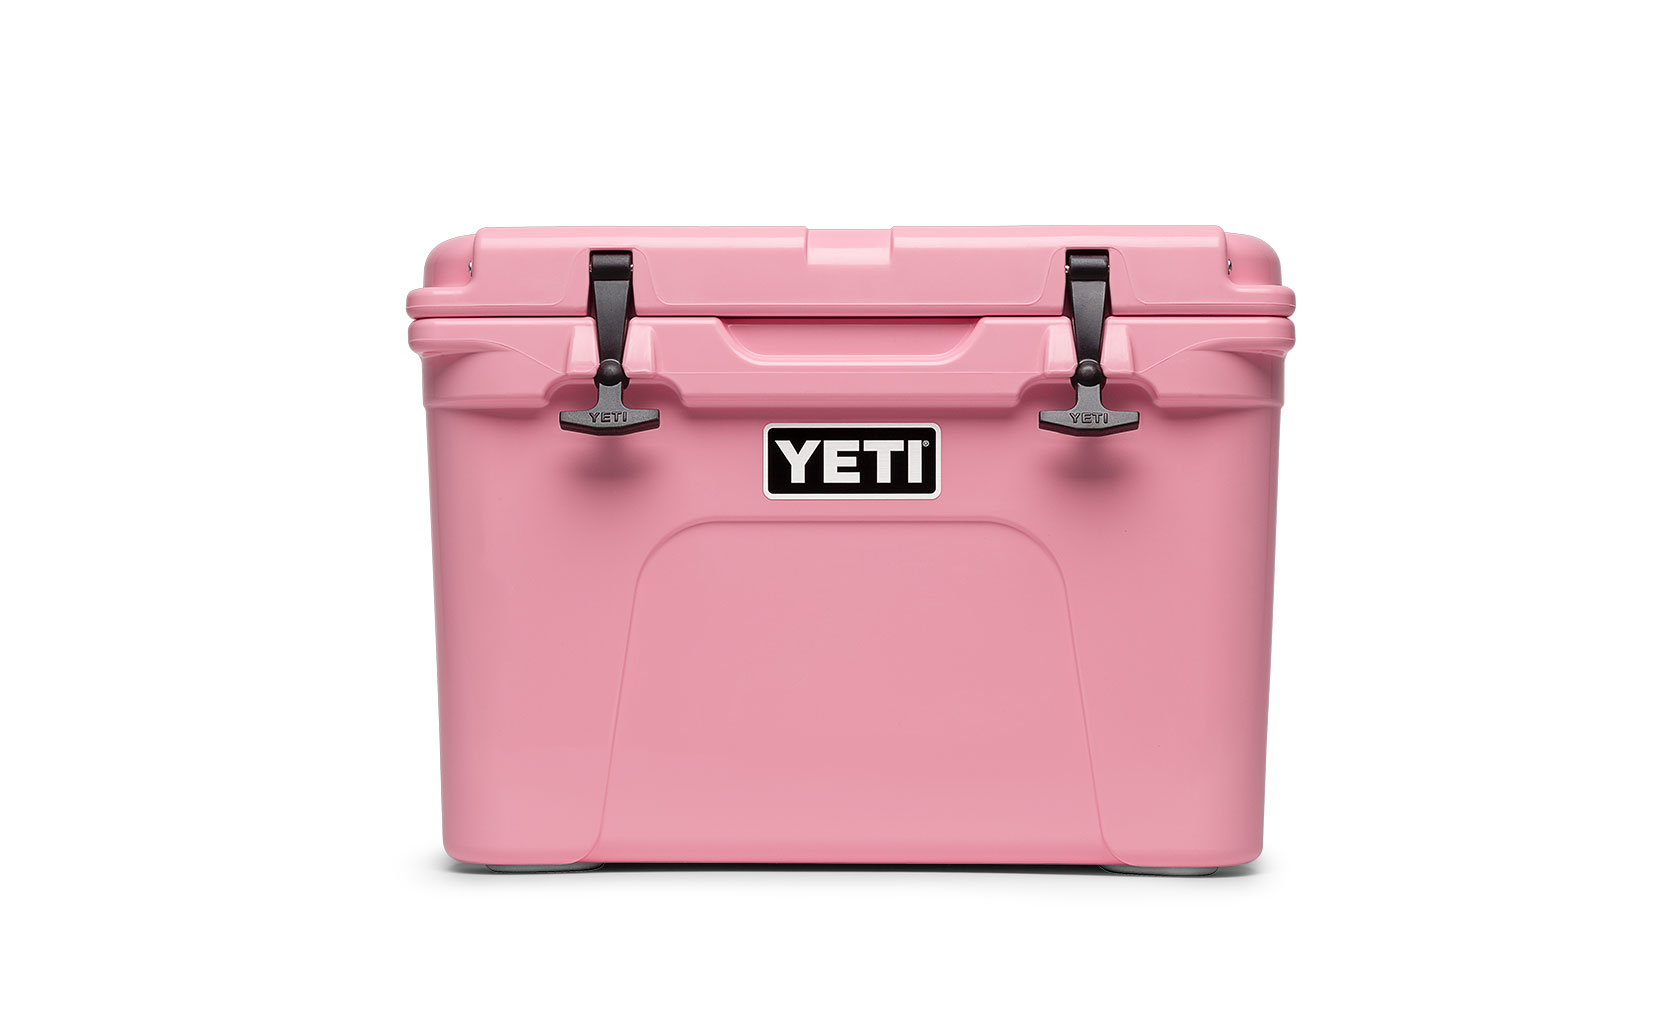 YETI / Tundra 35 - Pink